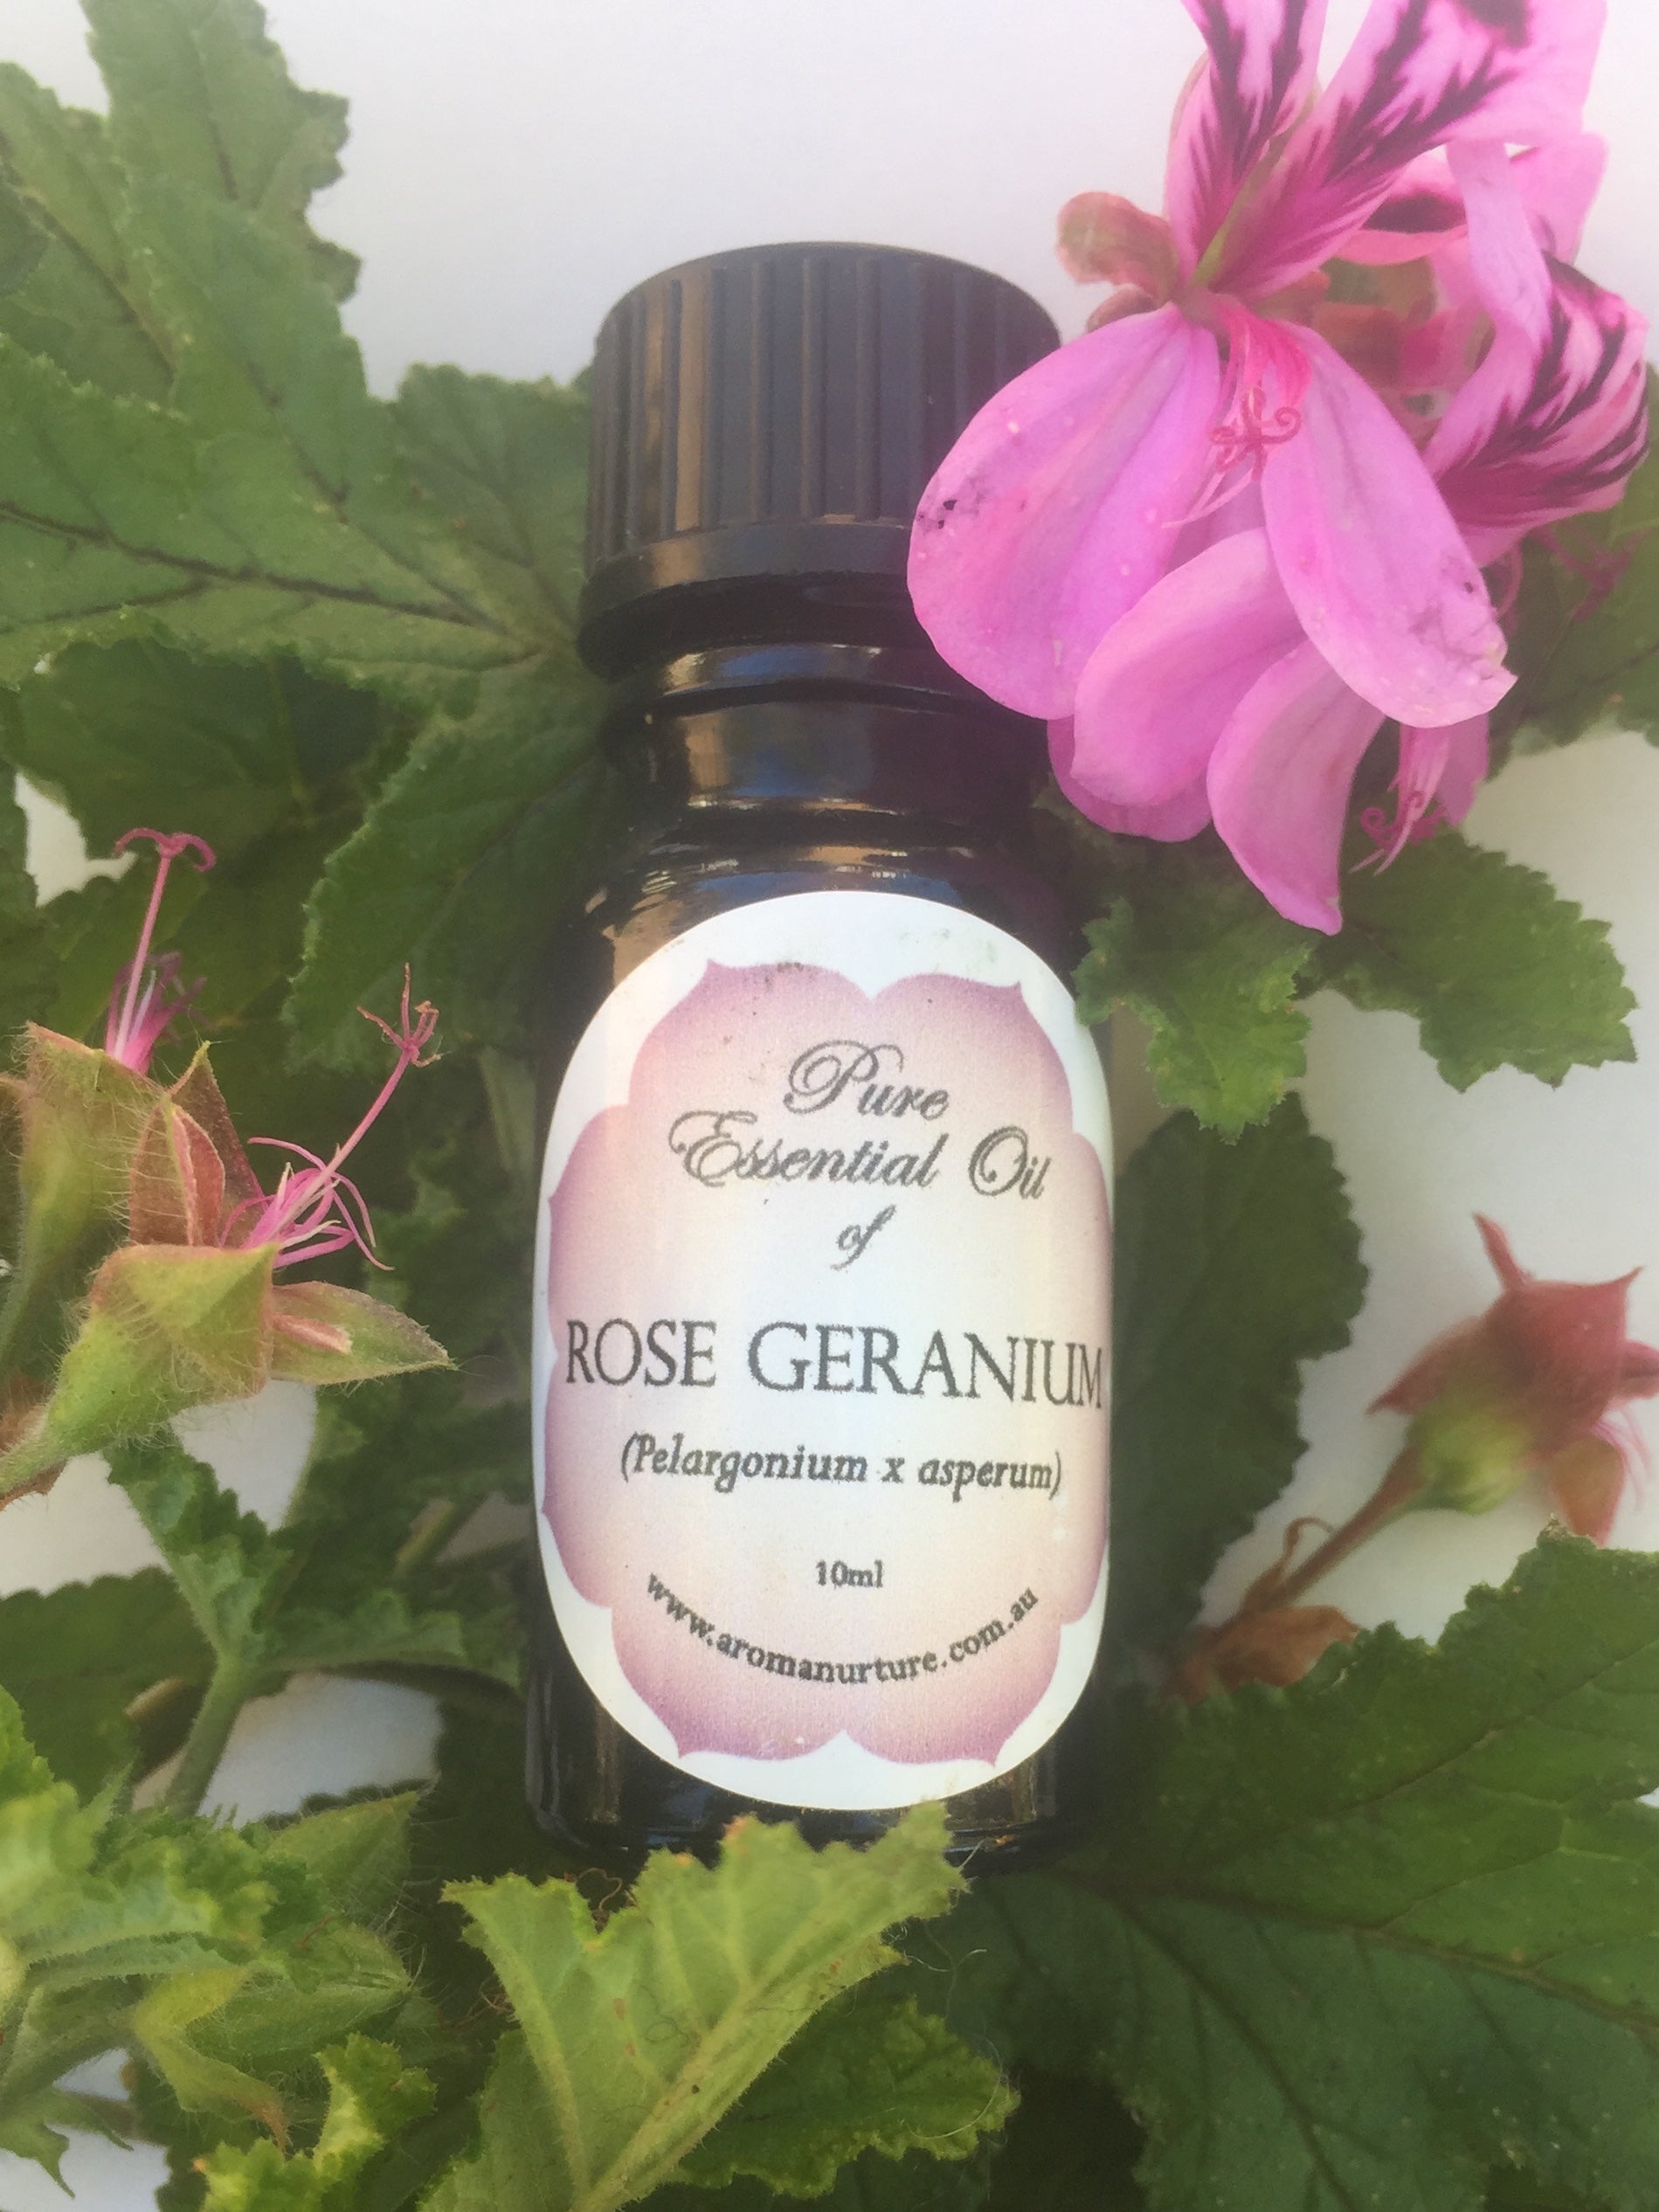 Pure Essential Oil of Rose Geranium